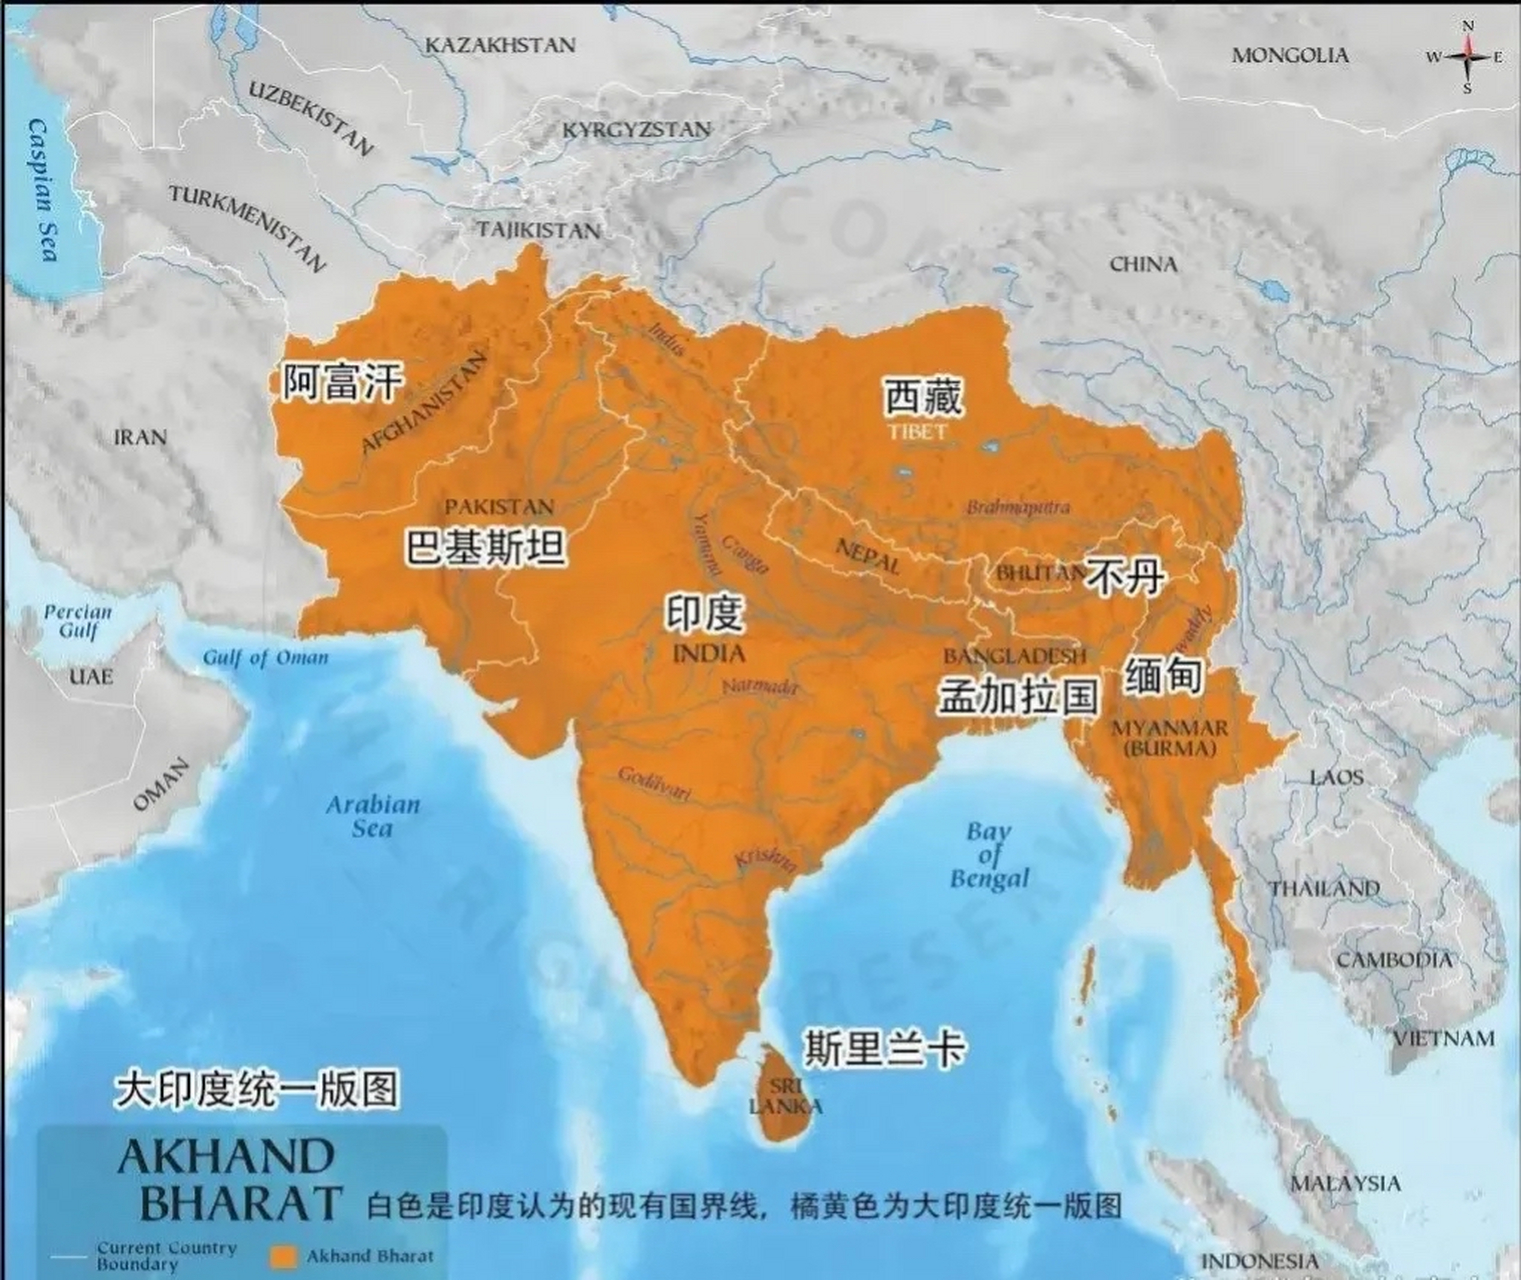 印度所谓的大印度联邦计划,竟试图把西藏全部纳入版图,野心大到没谱